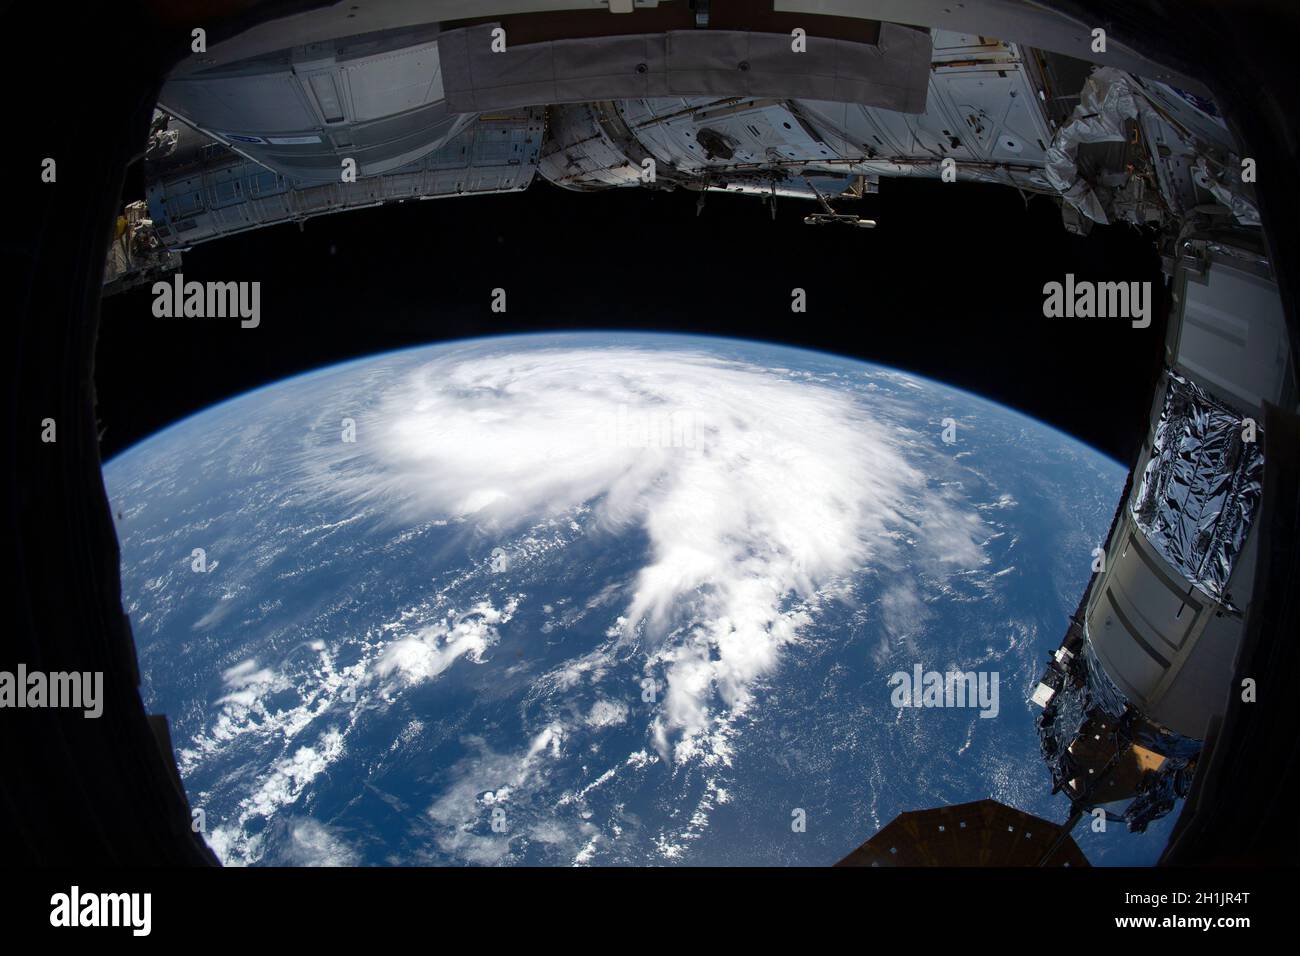 Vue panoramique depuis la Station spatiale internationale de la terre et une tempête tropicale (tempête tropicale Victor) N Océan Atlantique Banque D'Images